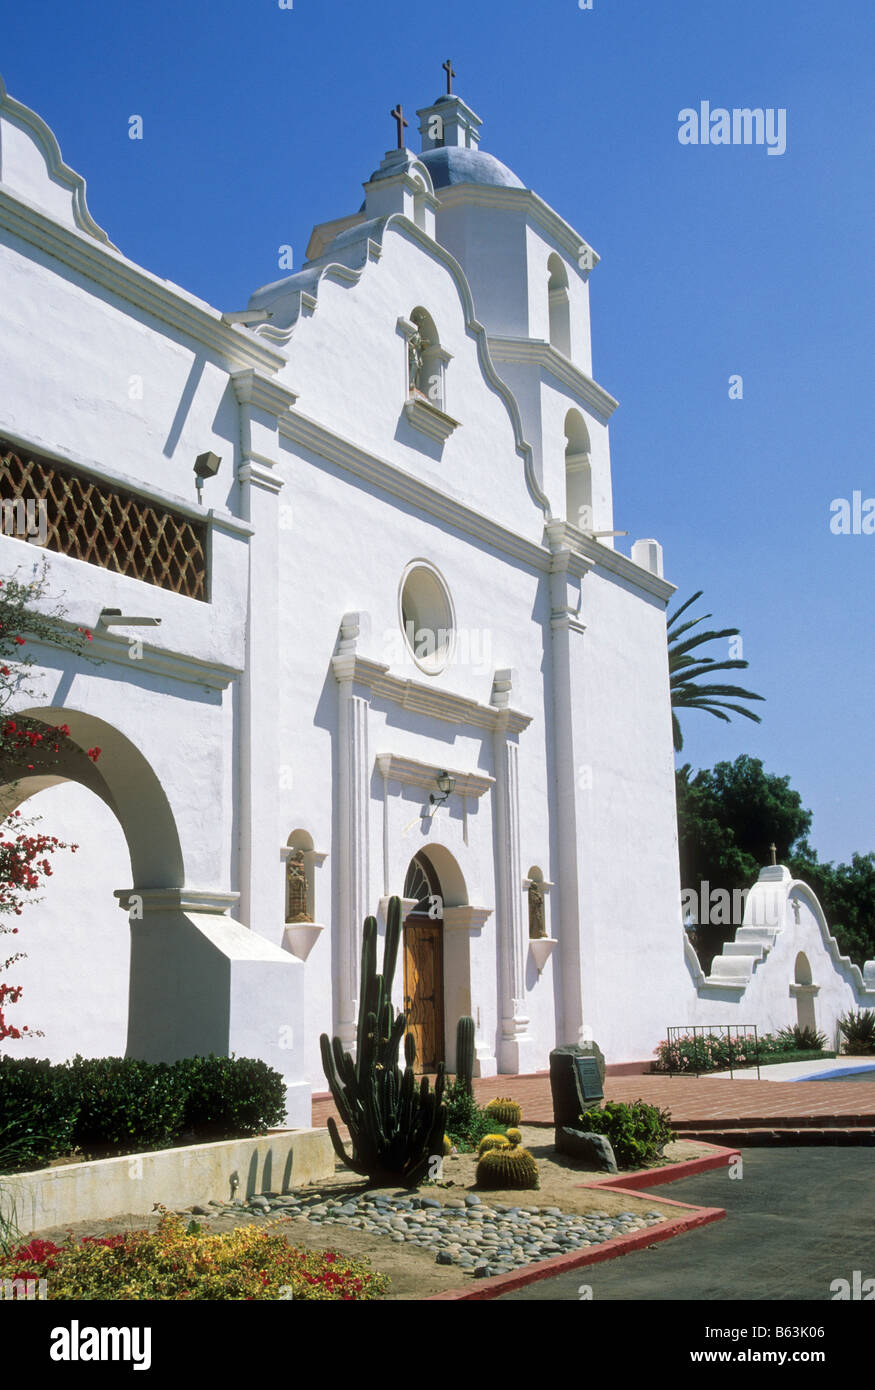 Mission de la Californie, près de Santa Ynez Solvang, Californie. Banque D'Images